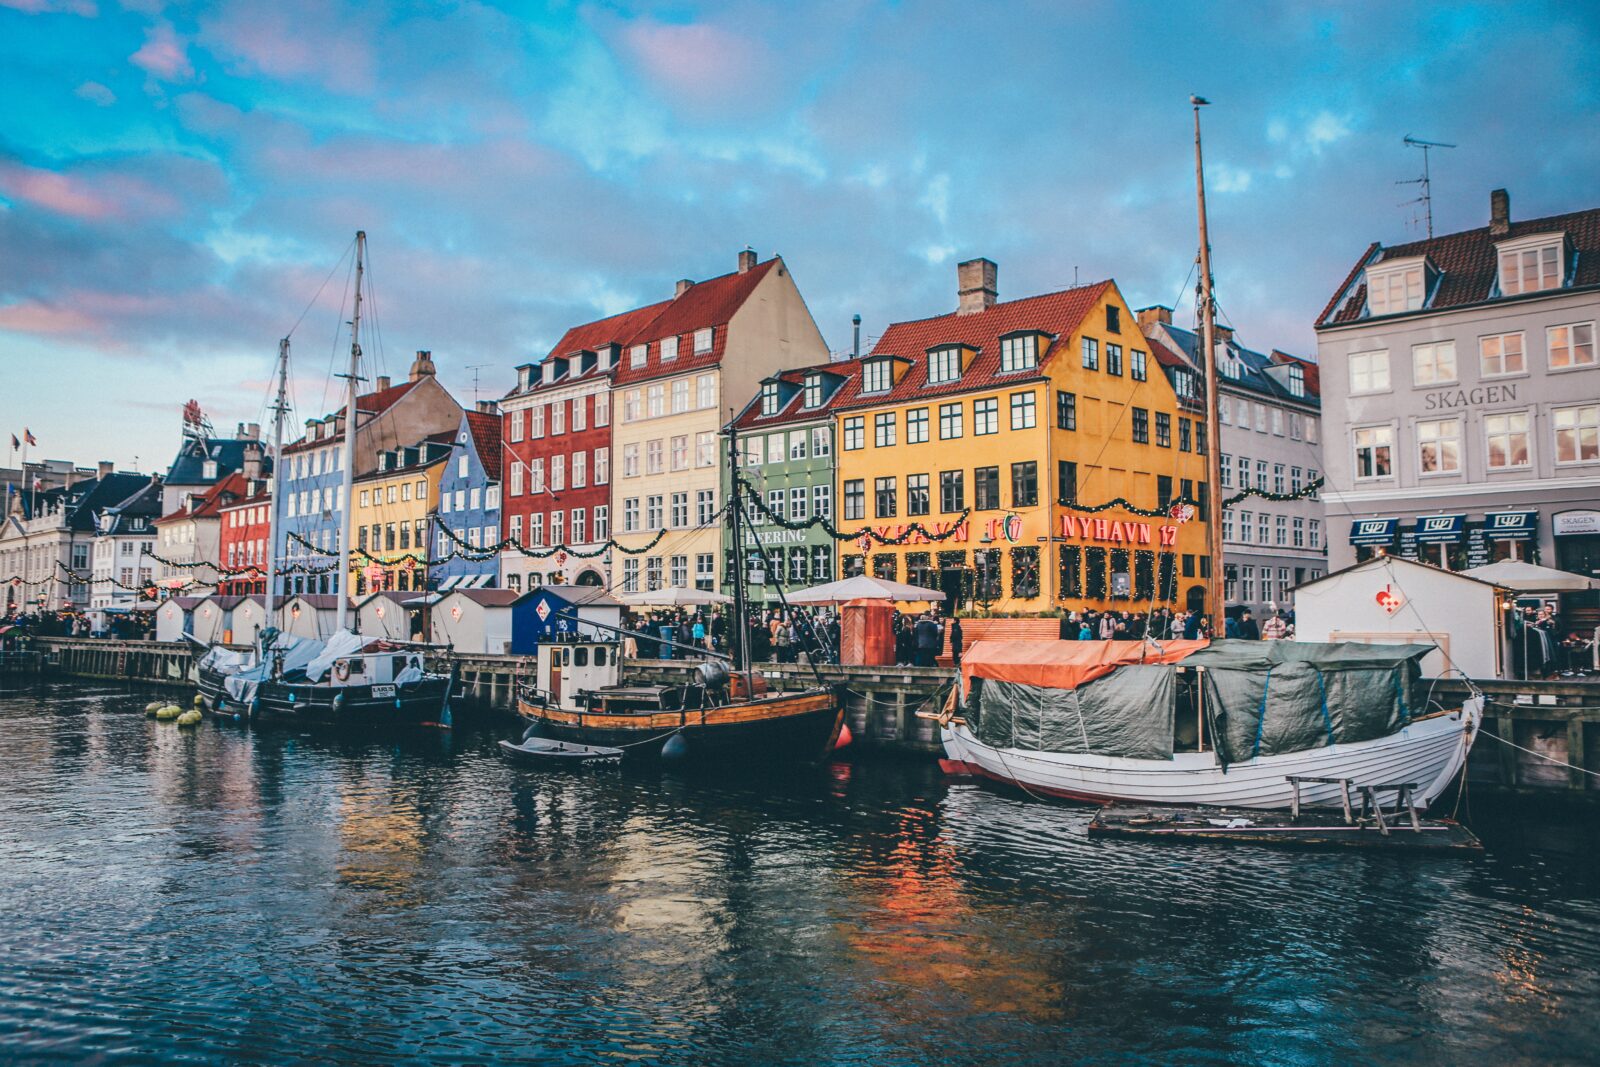 デンマークは米国に次いでスタートアップ企業に最も資金を提供している国である